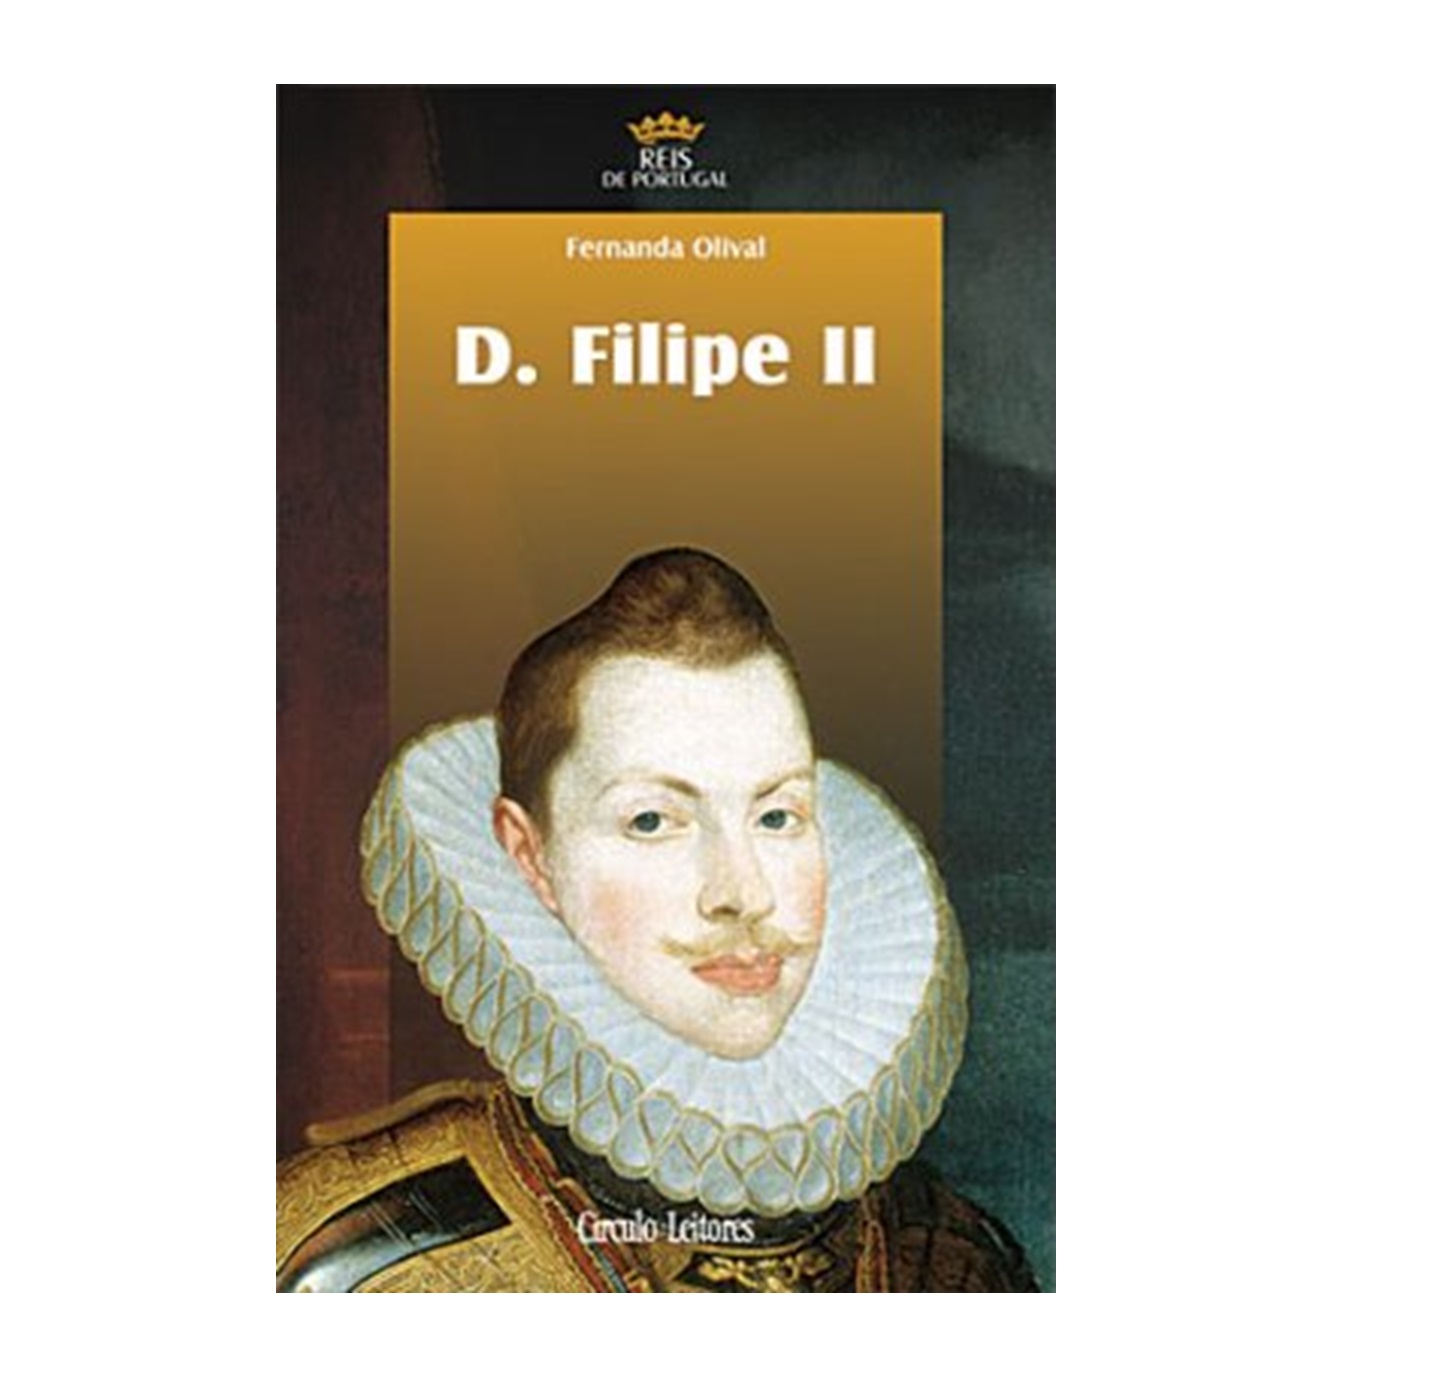 D. Filipe II